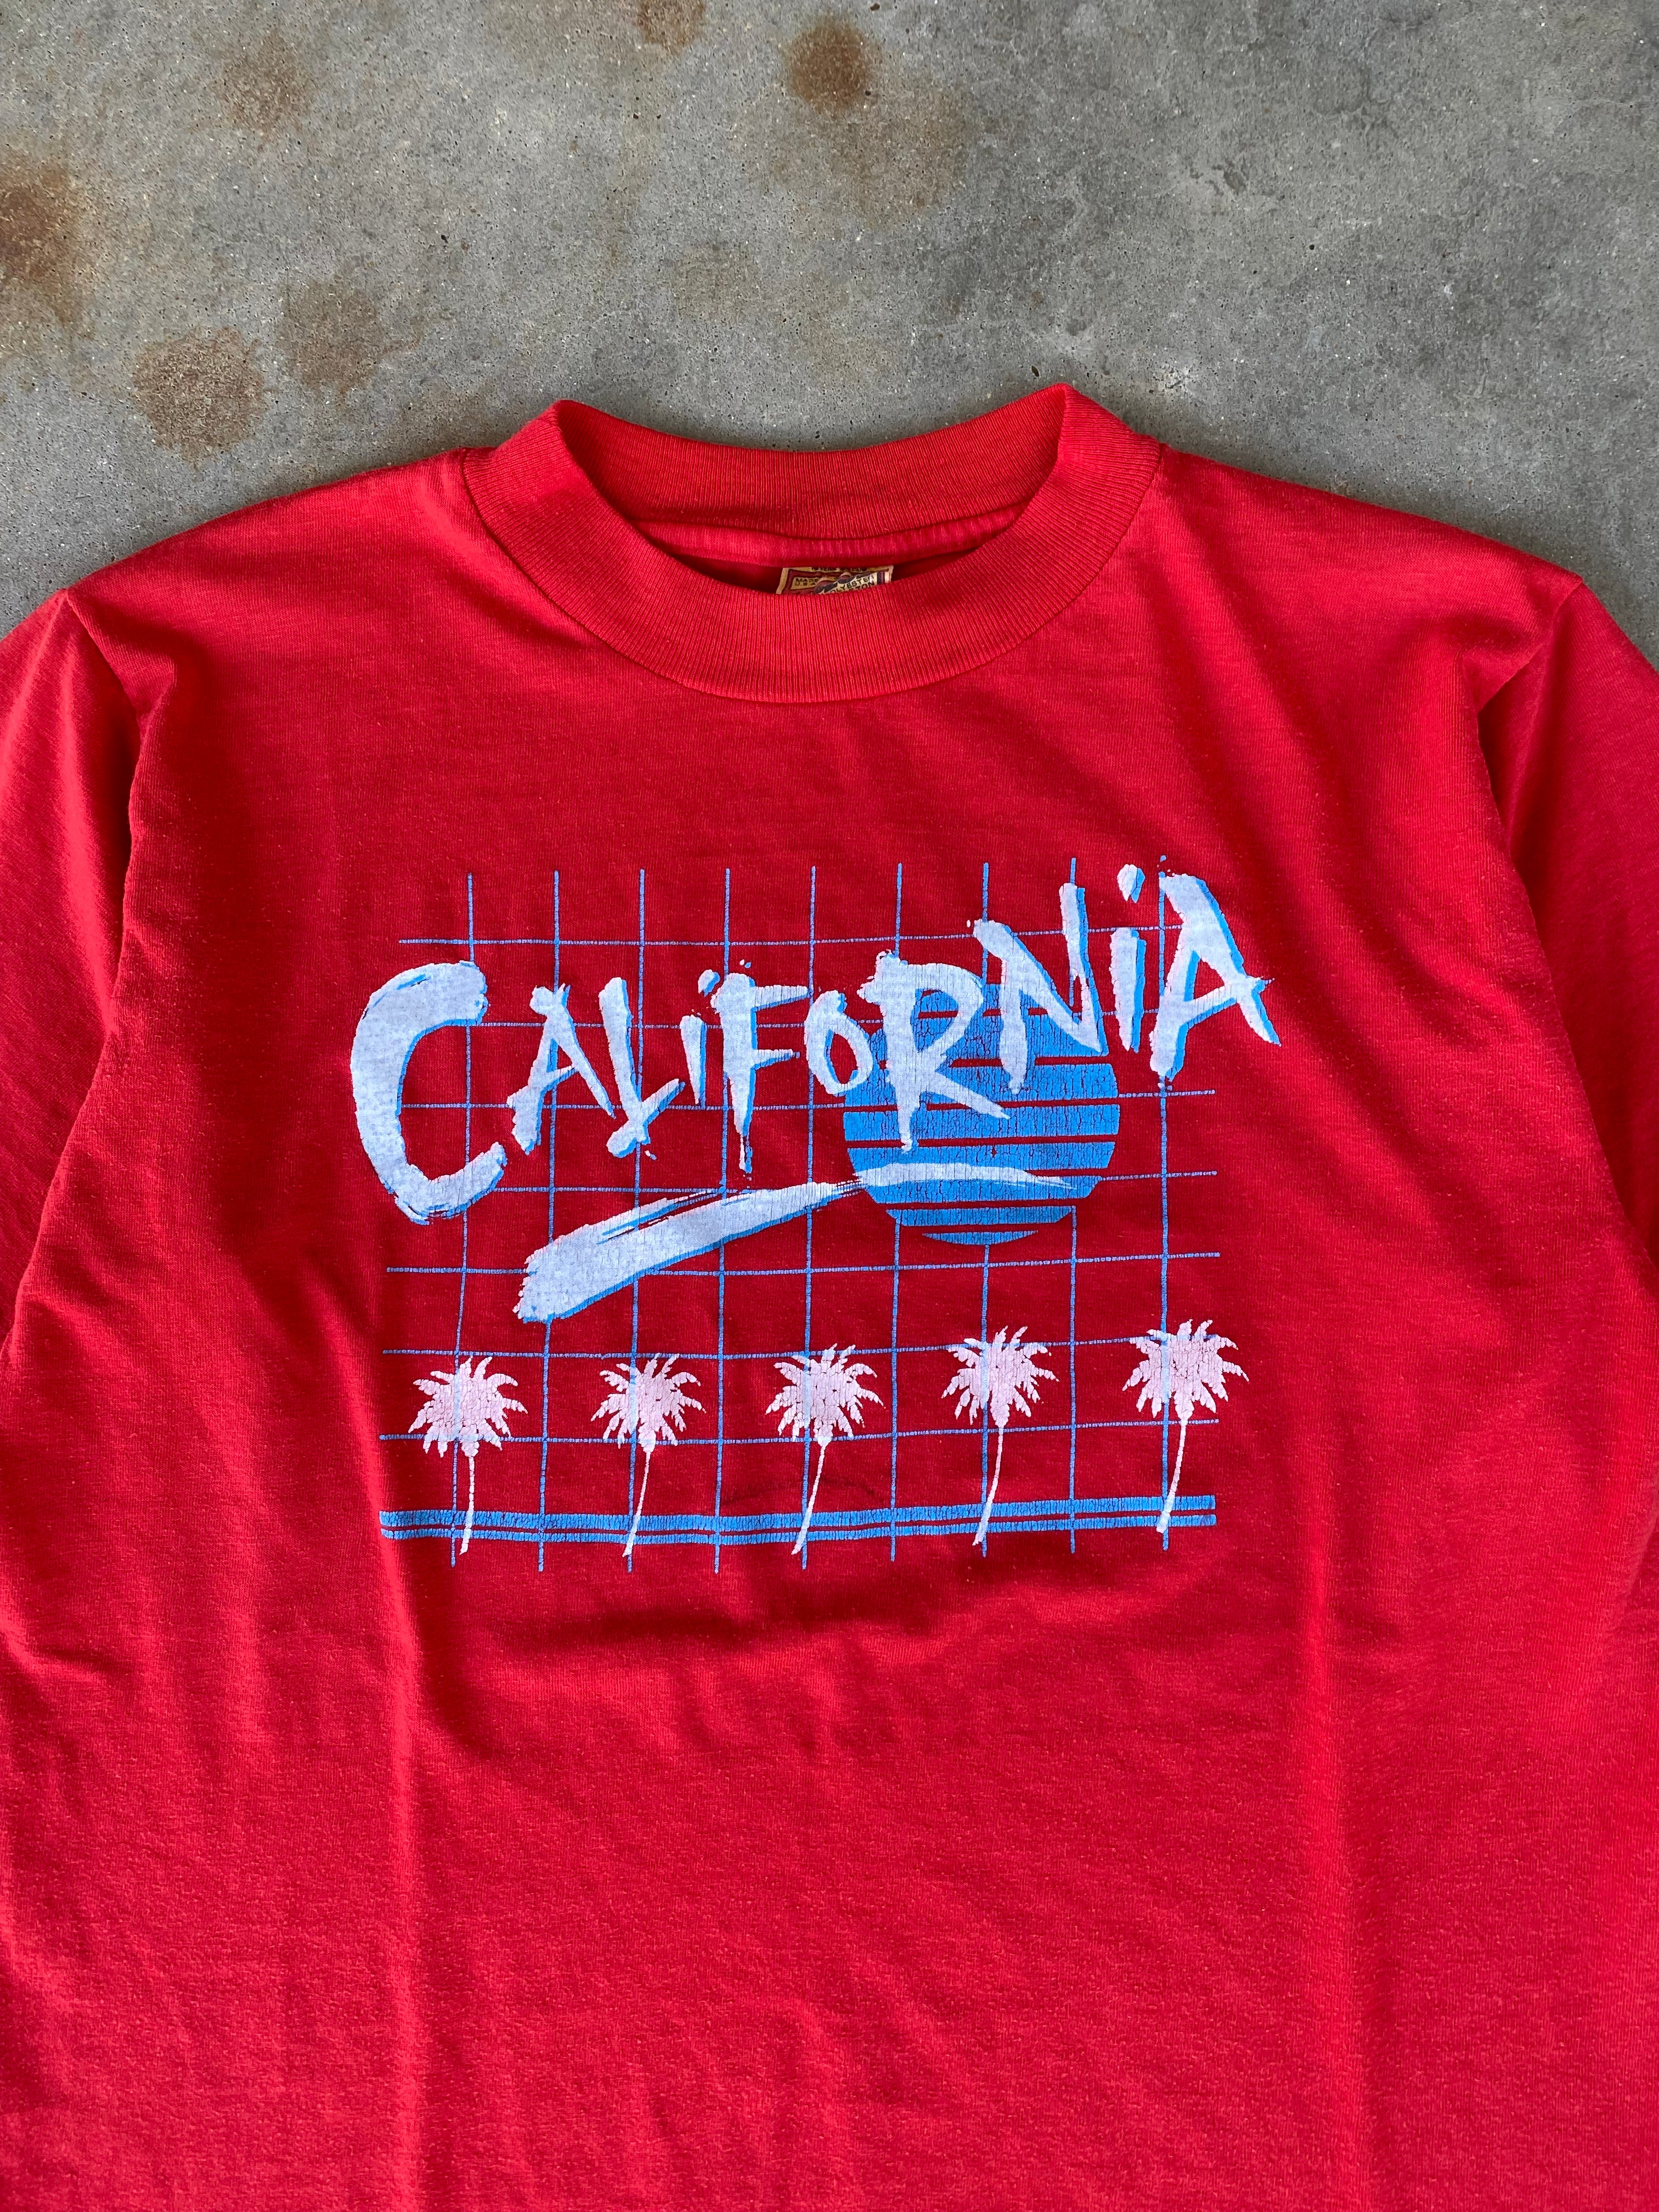 1980s California T-Shirt (S/M)